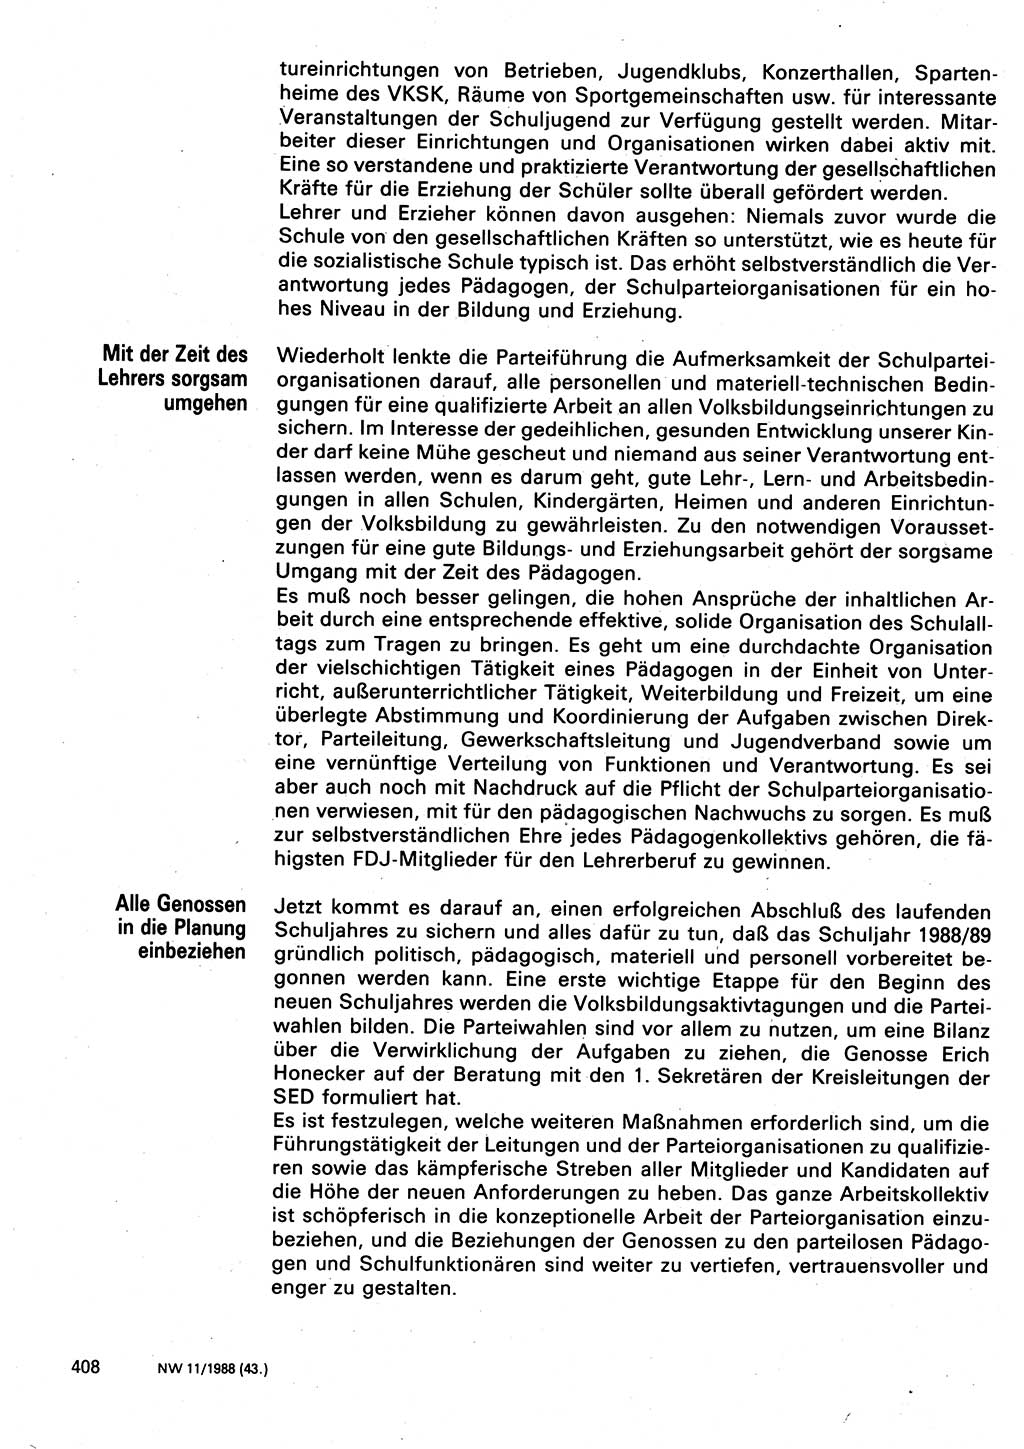 Neuer Weg (NW), Organ des Zentralkomitees (ZK) der SED (Sozialistische Einheitspartei Deutschlands) für Fragen des Parteilebens, 43. Jahrgang [Deutsche Demokratische Republik (DDR)] 1988, Seite 408 (NW ZK SED DDR 1988, S. 408)